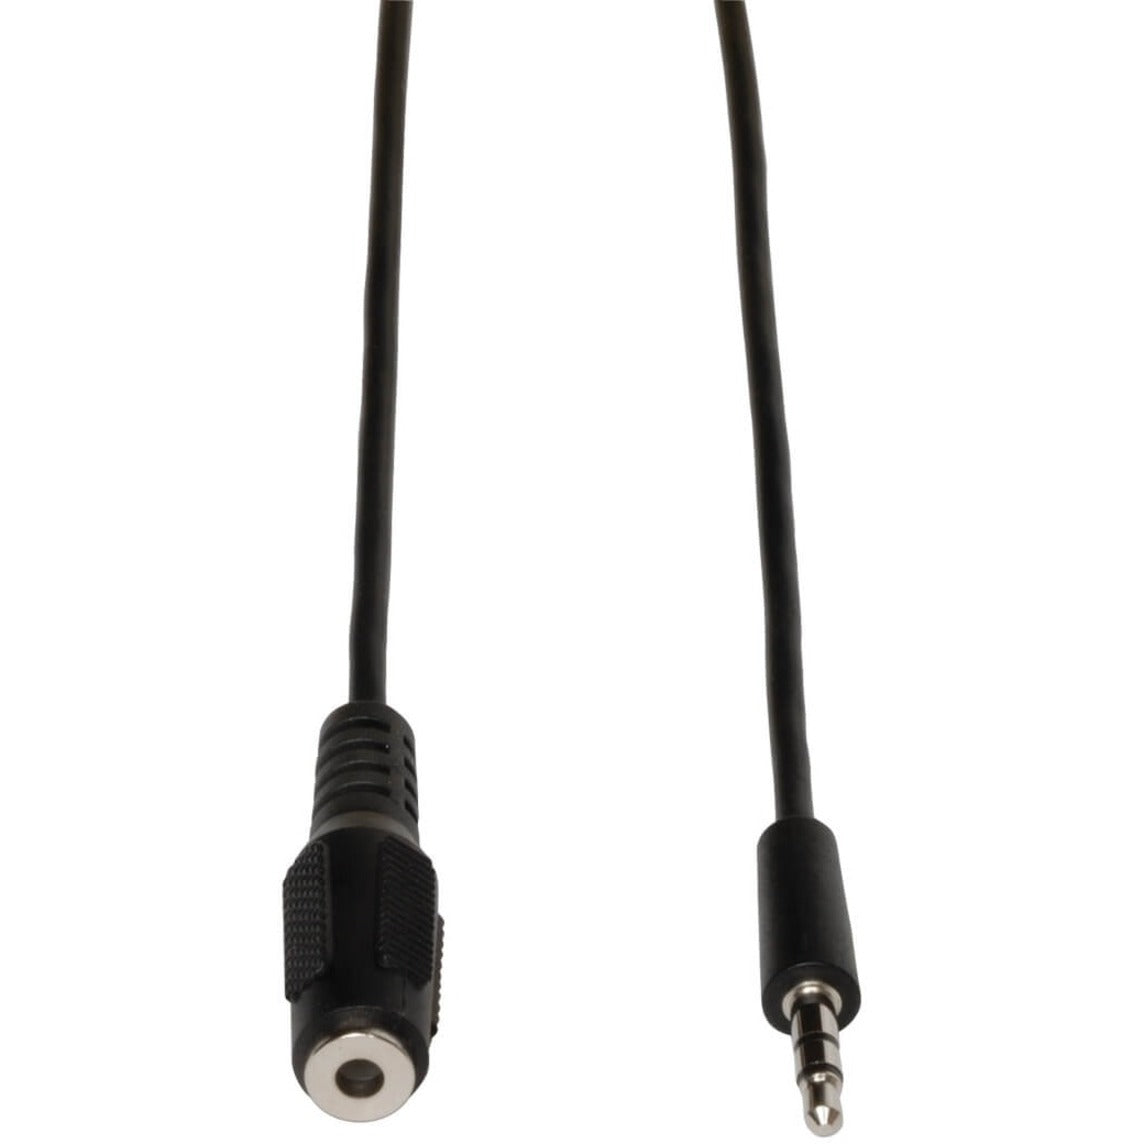 Marque: Tripp Lite Câble d'Extension Audio Stéréo Mini 35mm M/F P311-006 6ft Moulé Conducteur en Cuivre Blindé